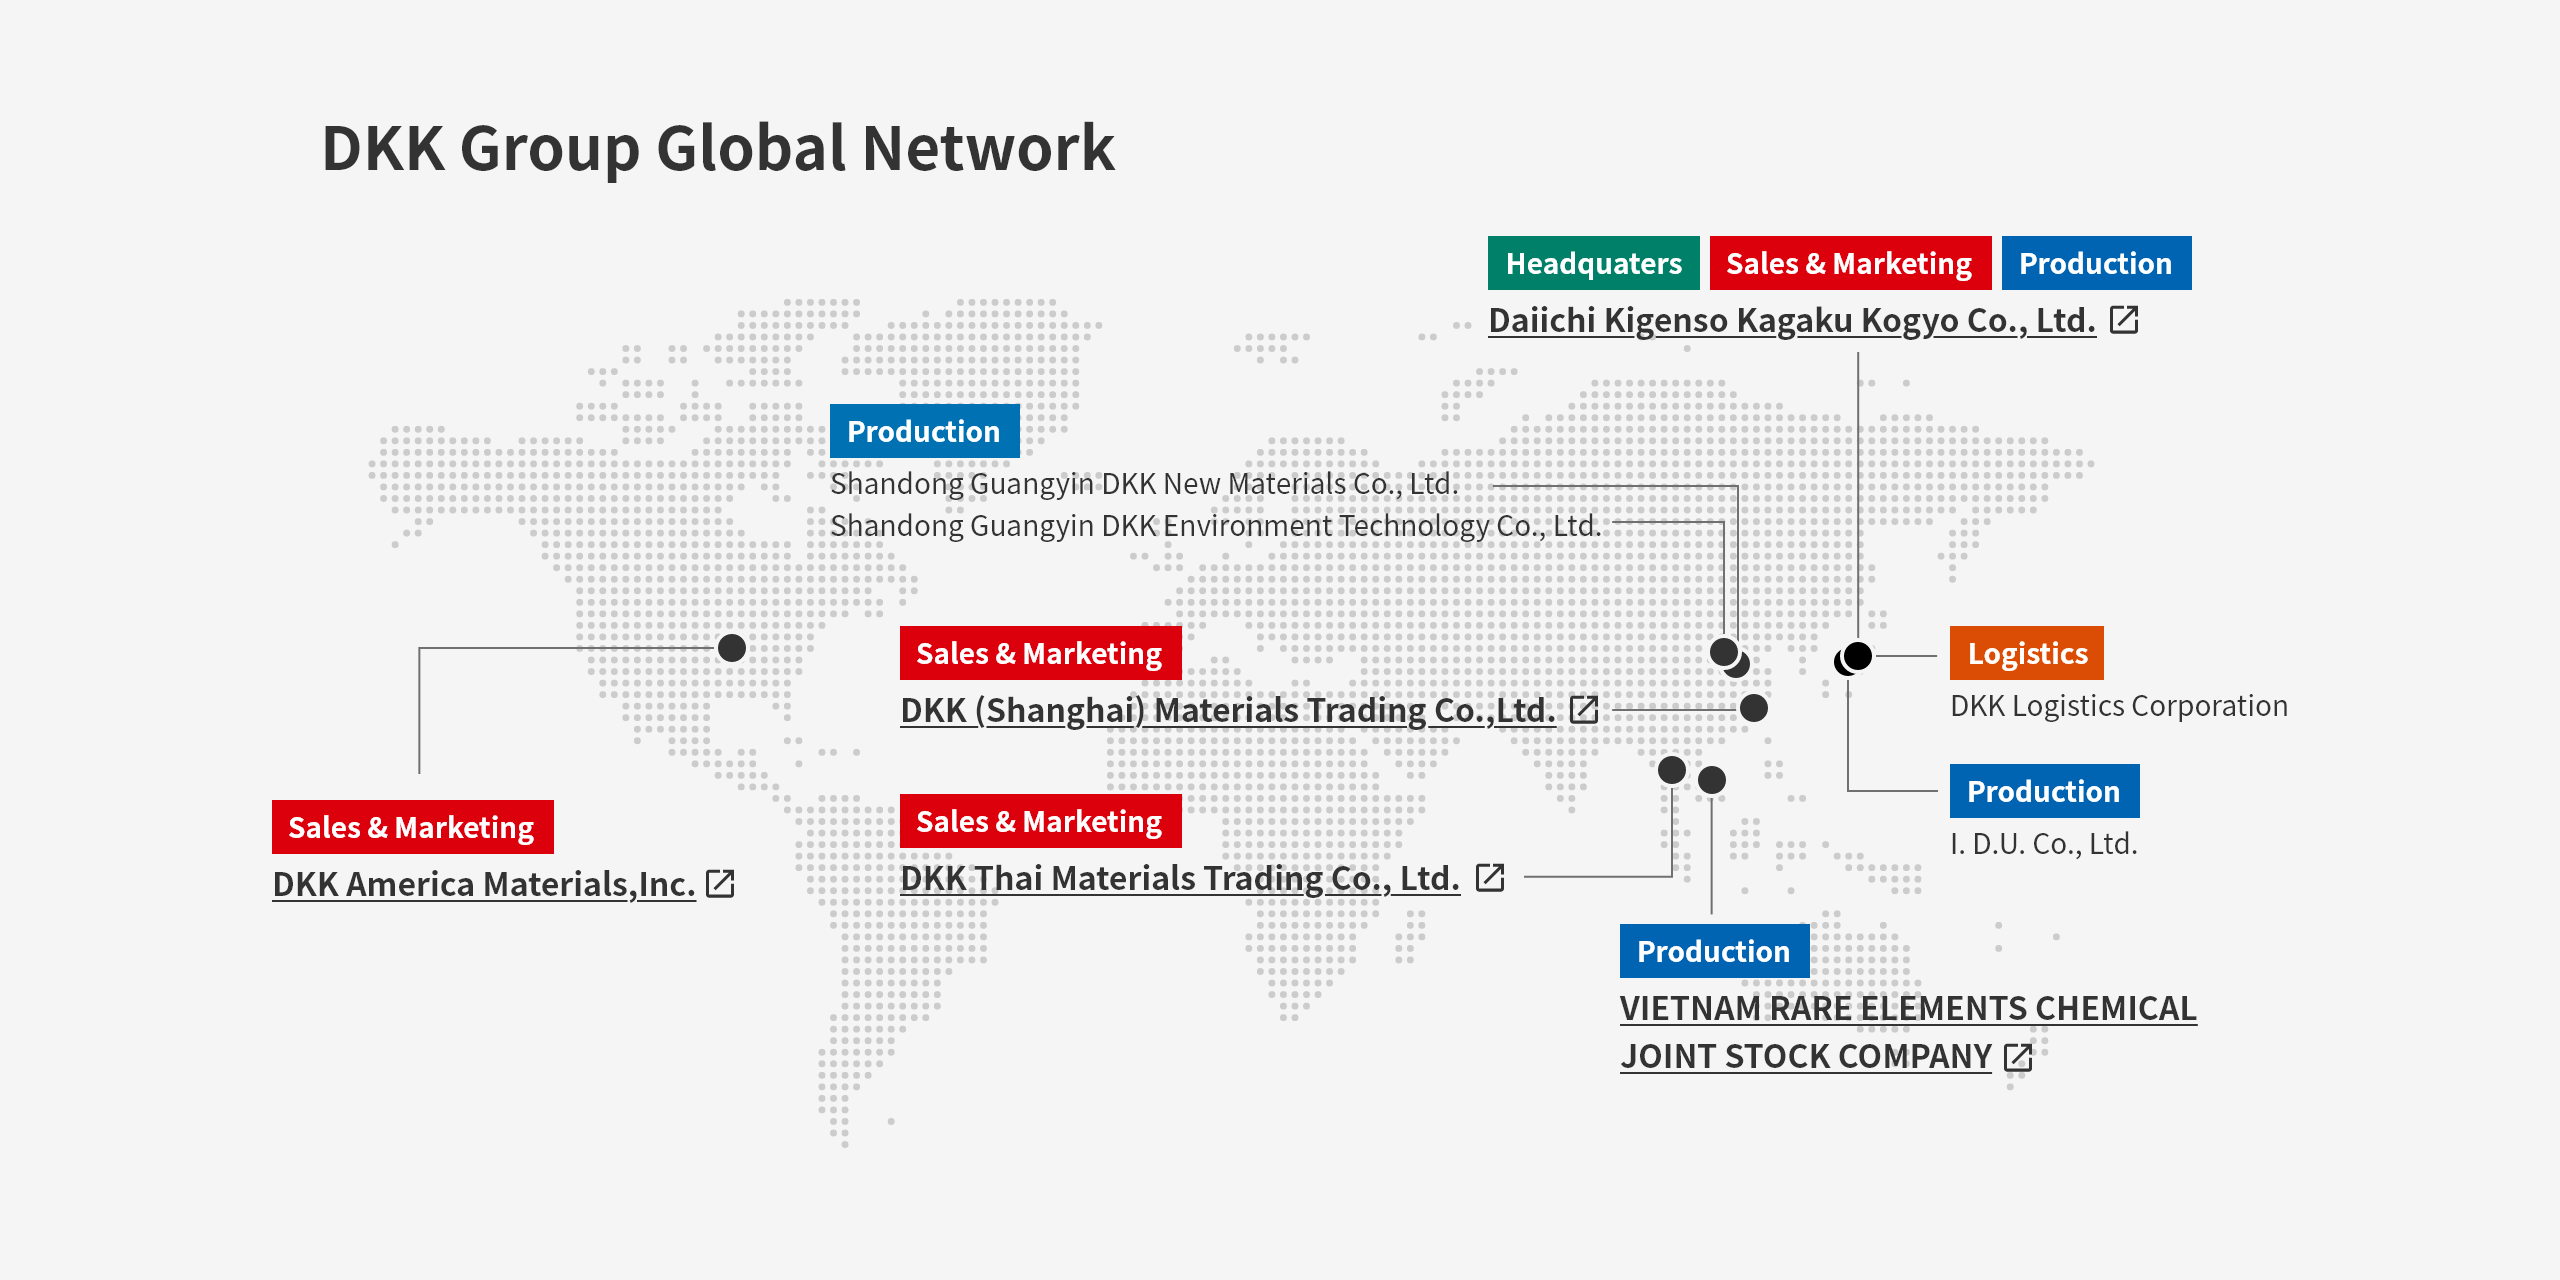 DKK Group Global Network